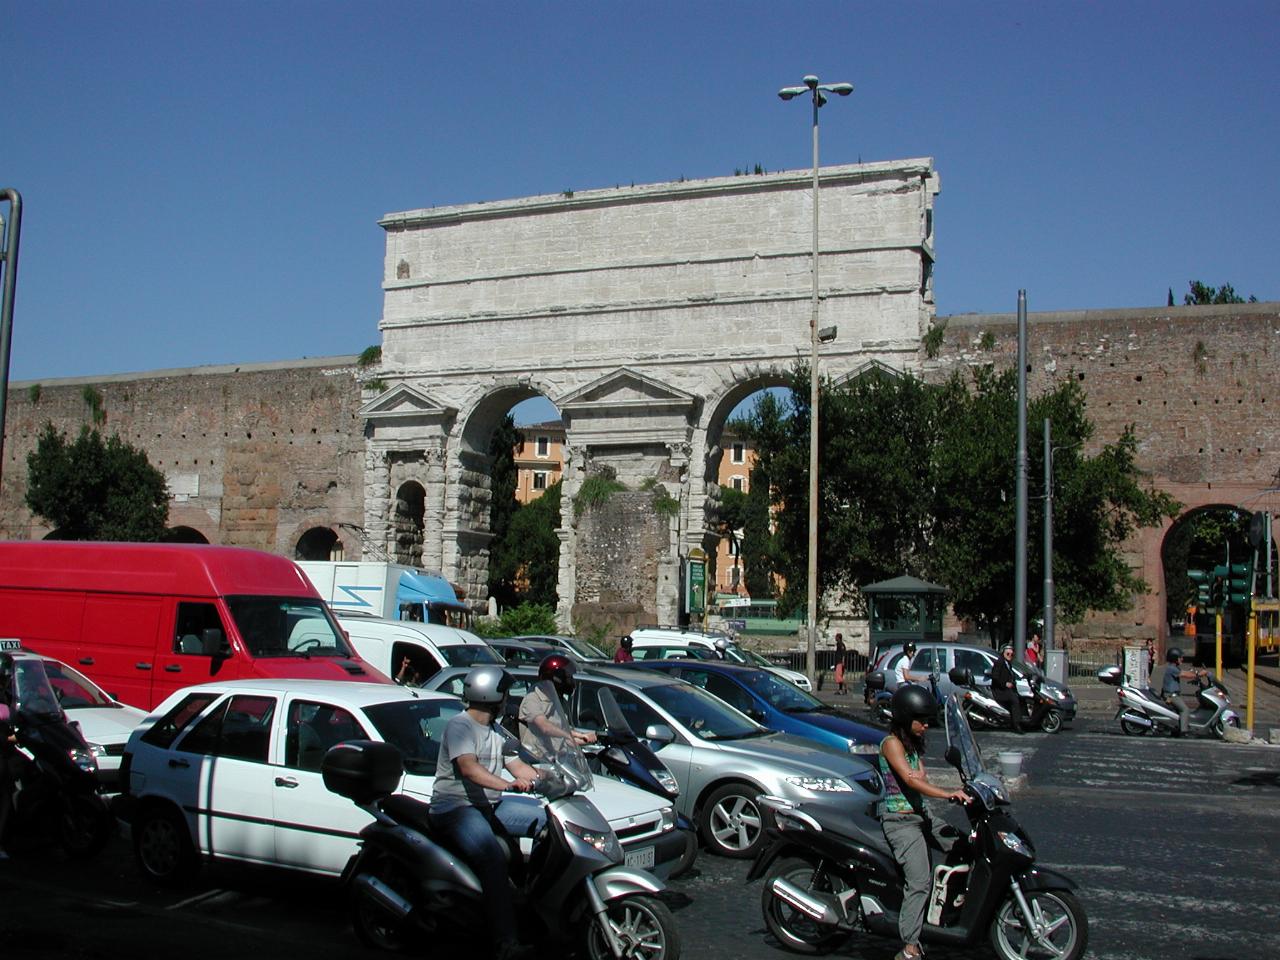 Porta Maggiore at Piazza Di Porta Maggiore